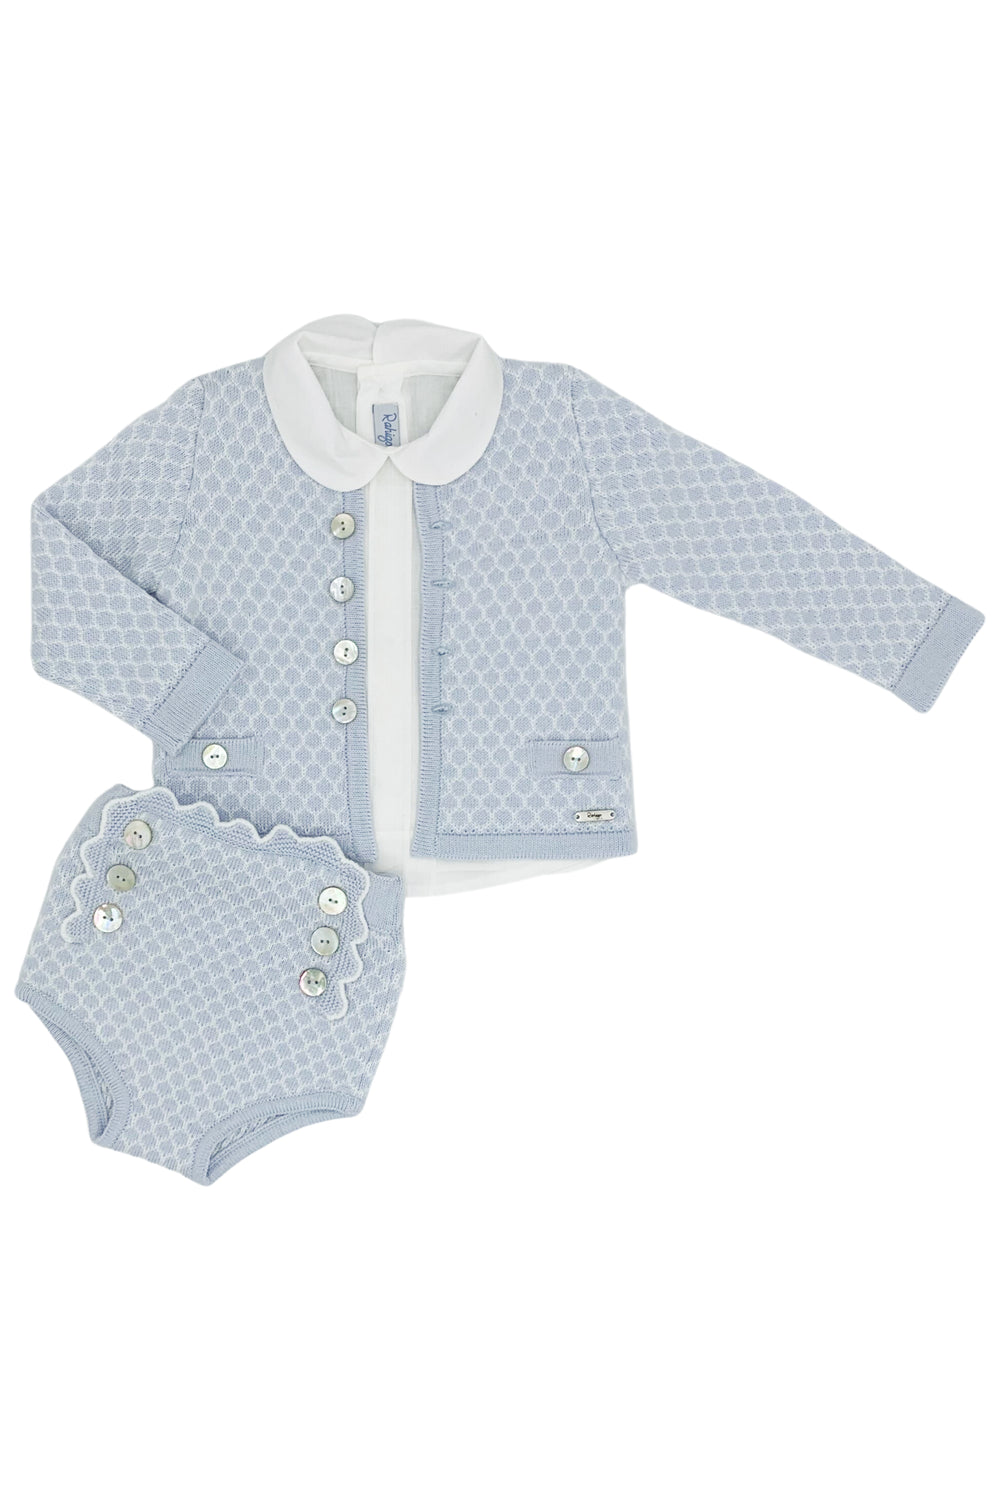 Rahigo "Hugo" Baby Blue Knit Cardigan, Shirt & Jam Pants | iphoneandroidapplications